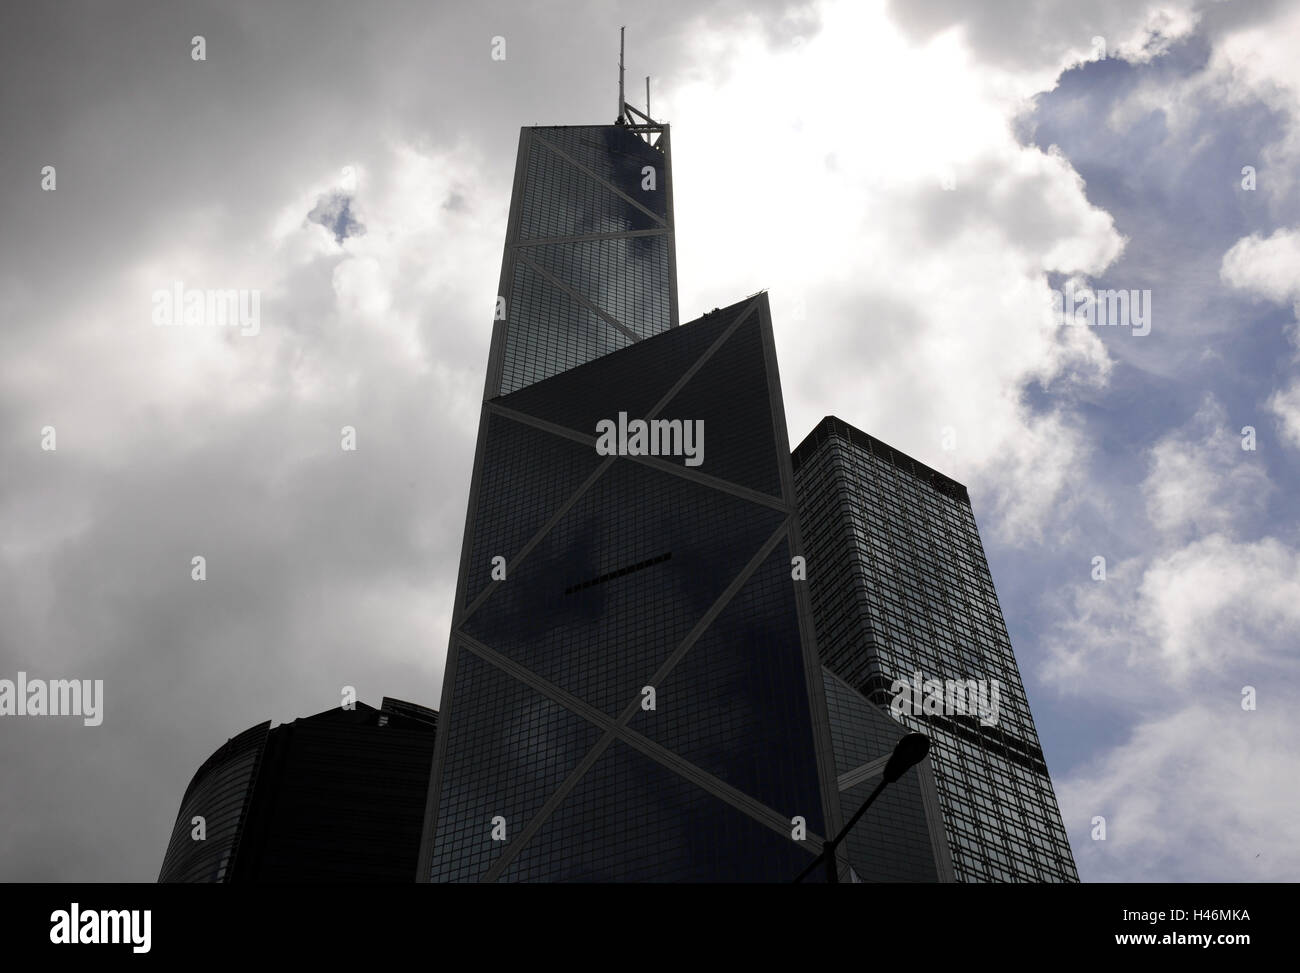 High rises, banks, facade, window, heaven, clouds, Hong Kong, China, Stock Photo